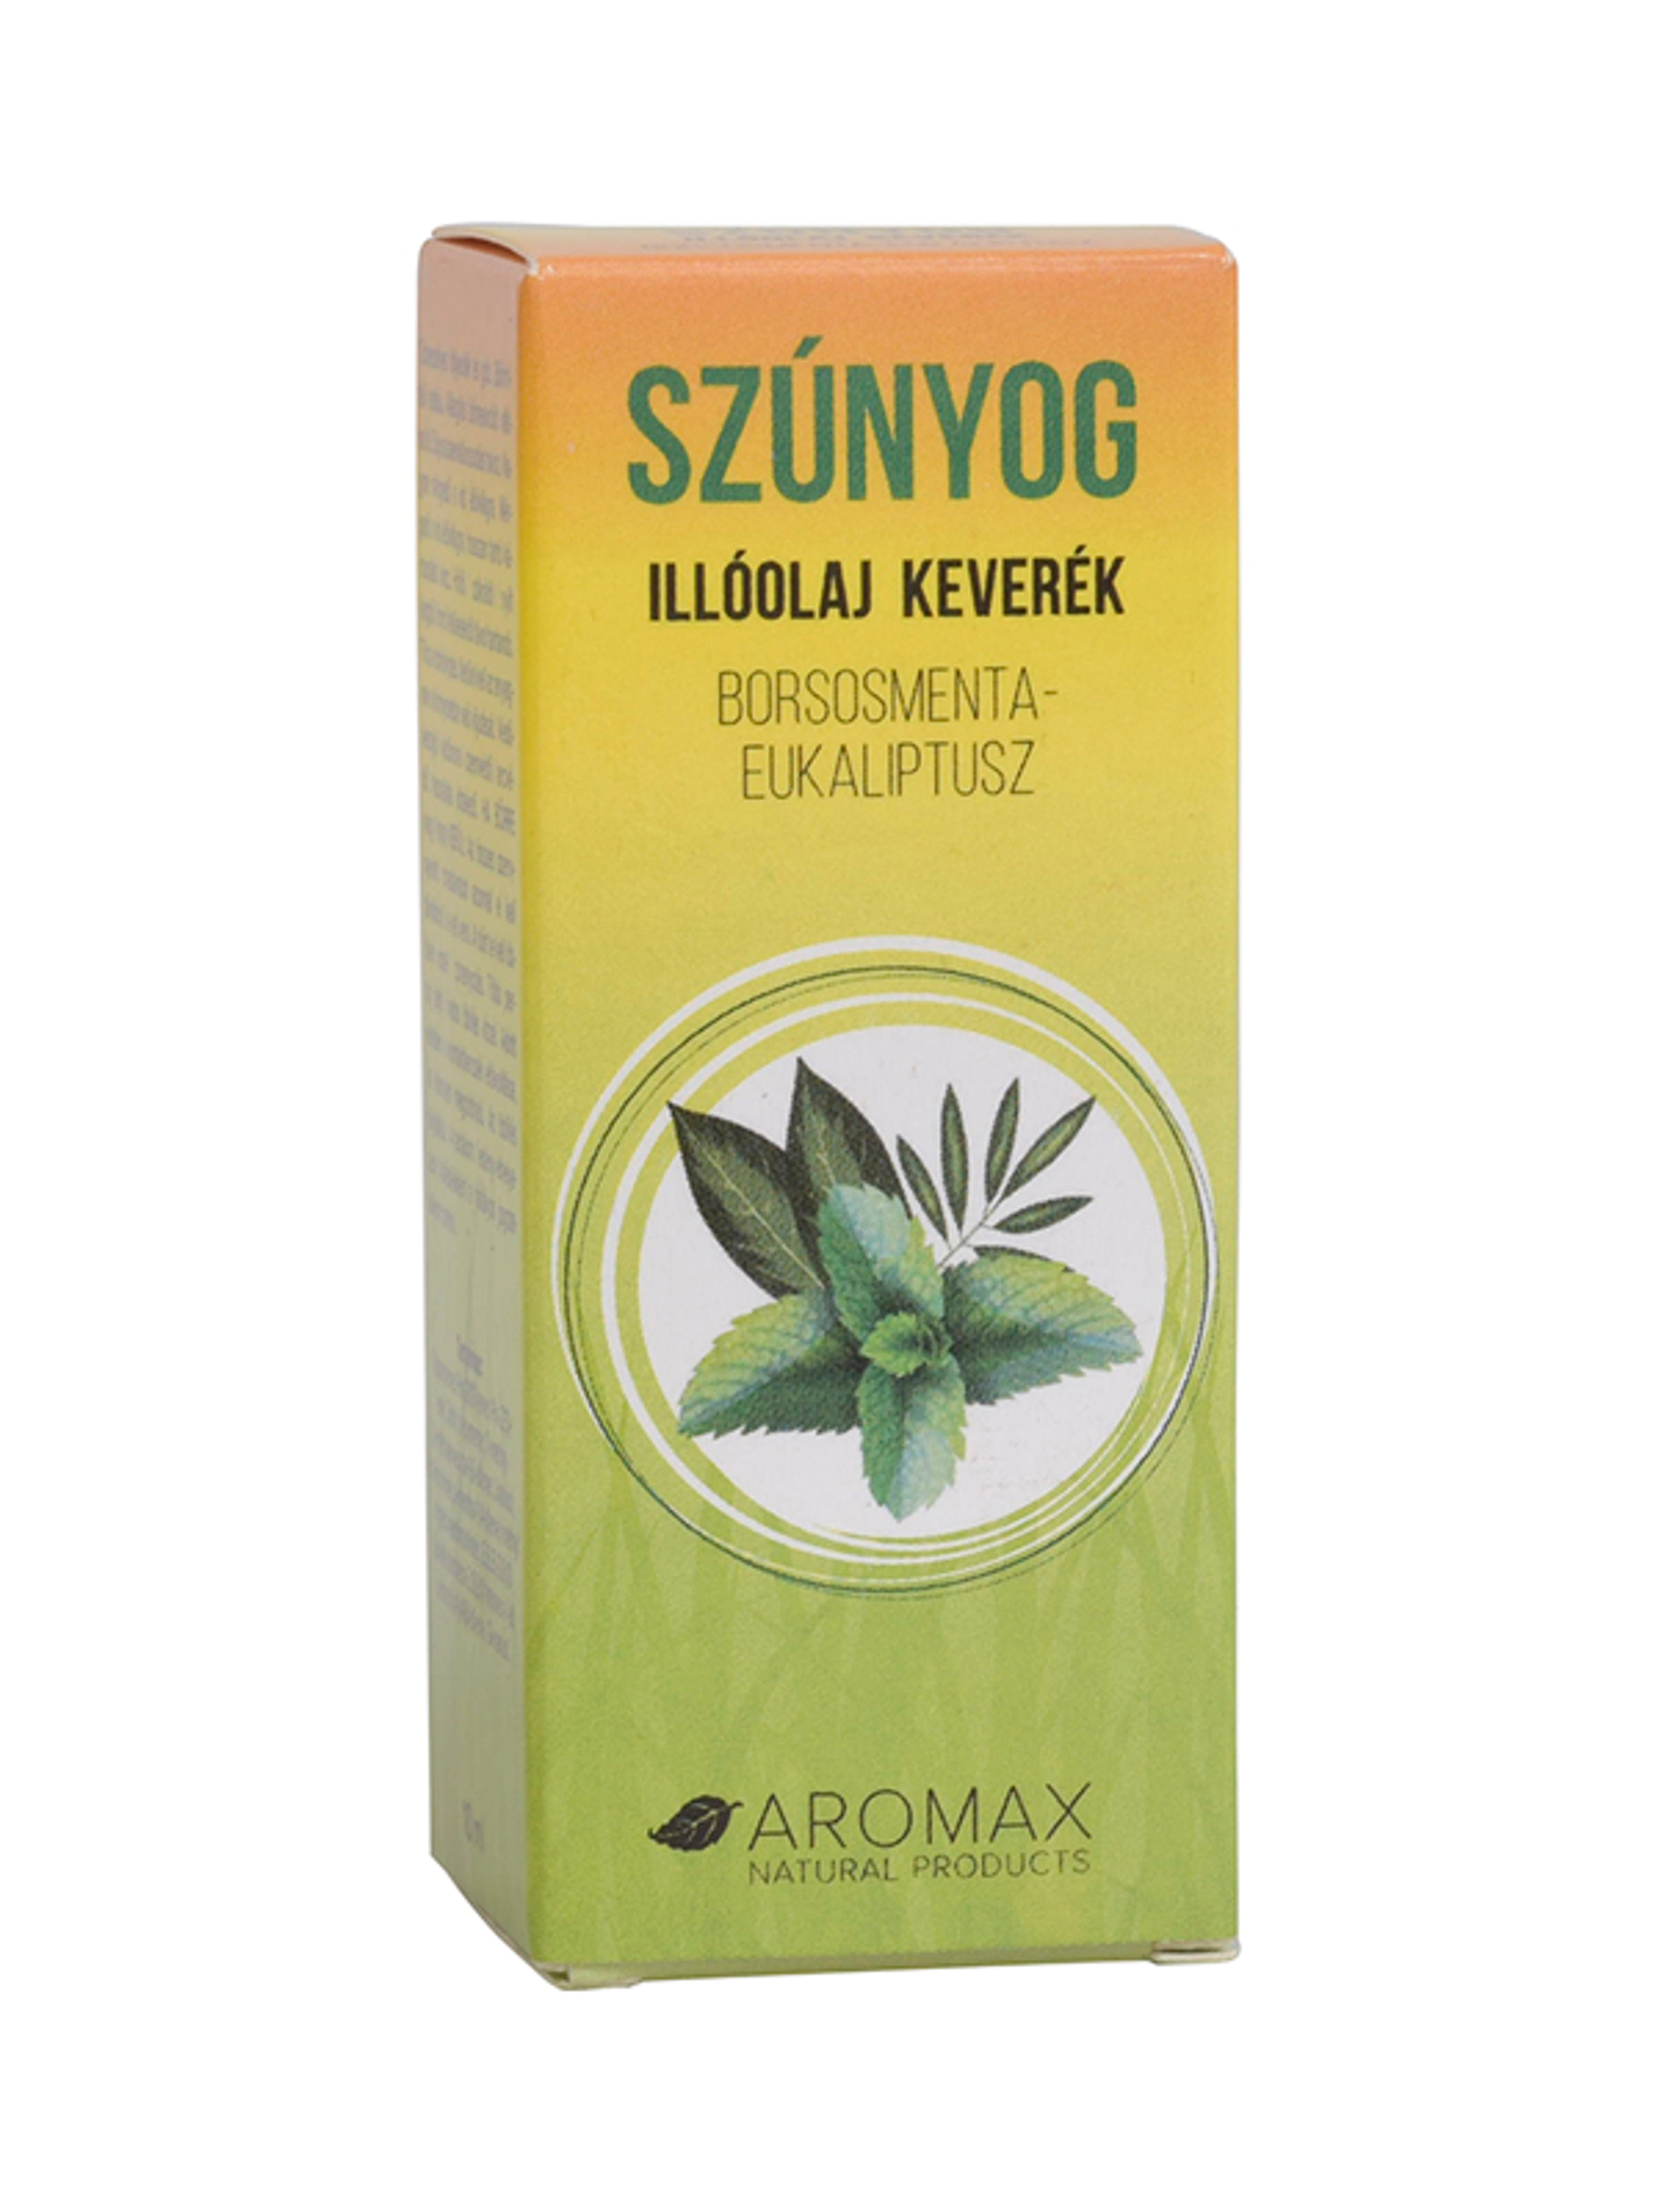 Aromax Borsmenta-Eukaliptusz Szúnyogstop Keverék Illóolaj - 10 ml-1